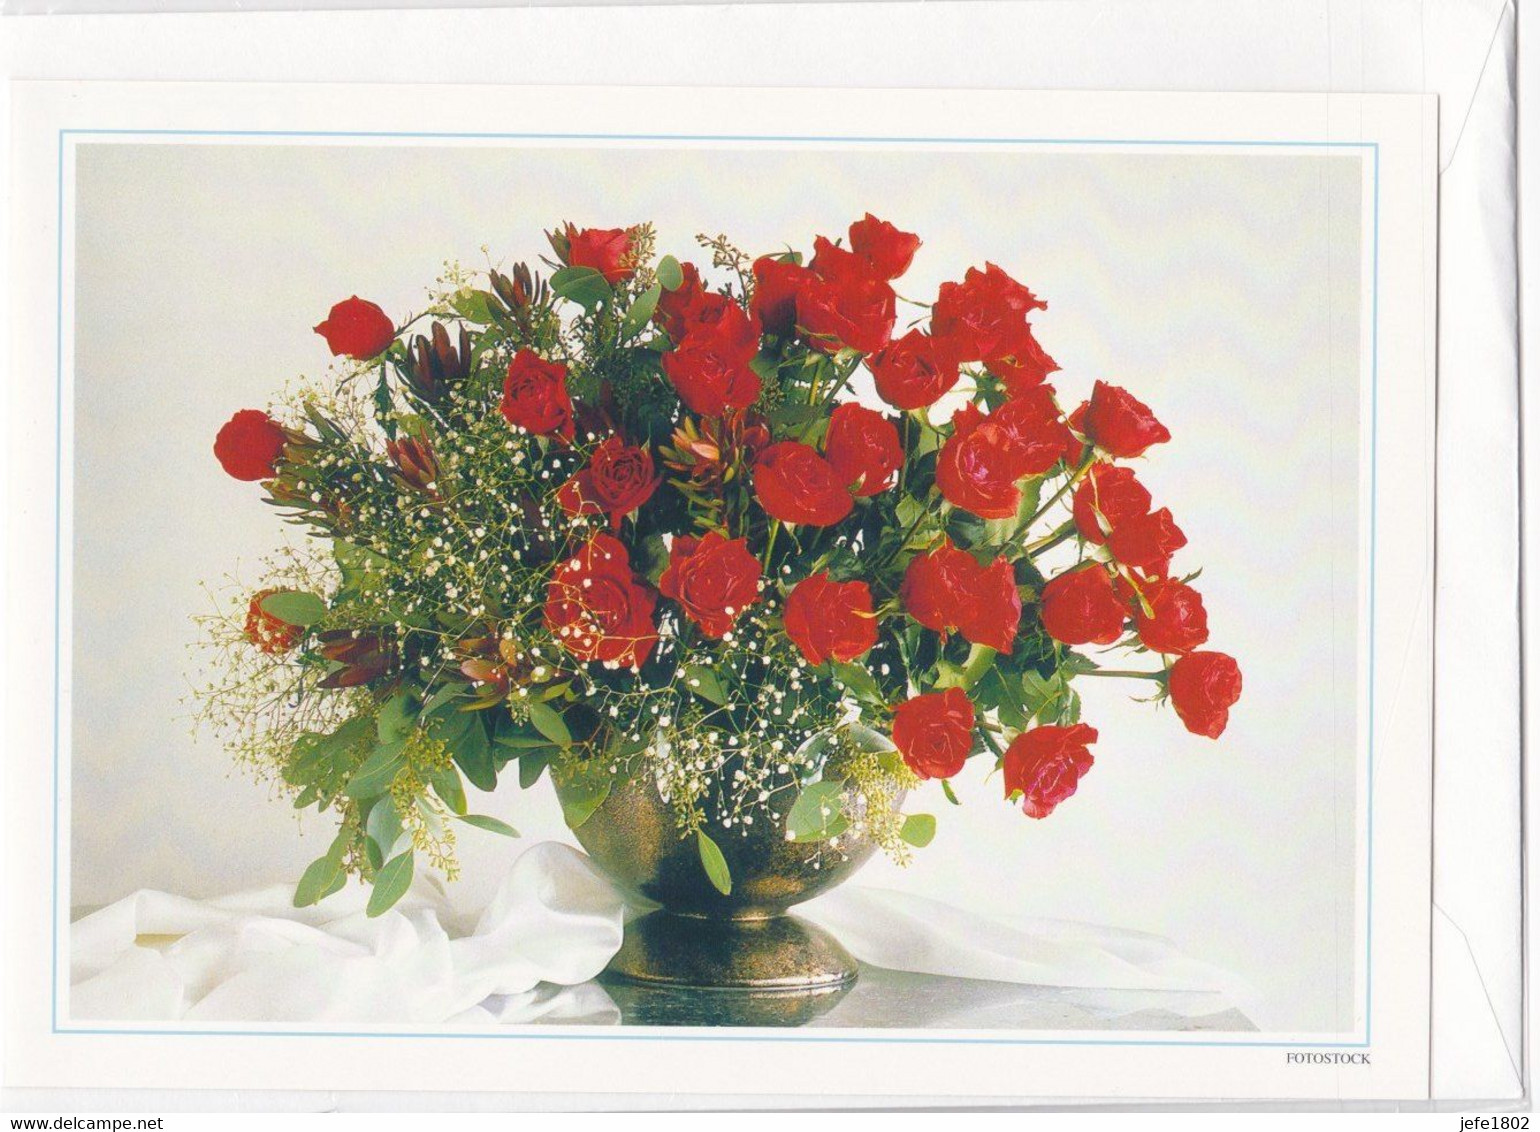 Postogram 117 / 97 - Rozen - Fotostock - Flowers Rosen - Postogram